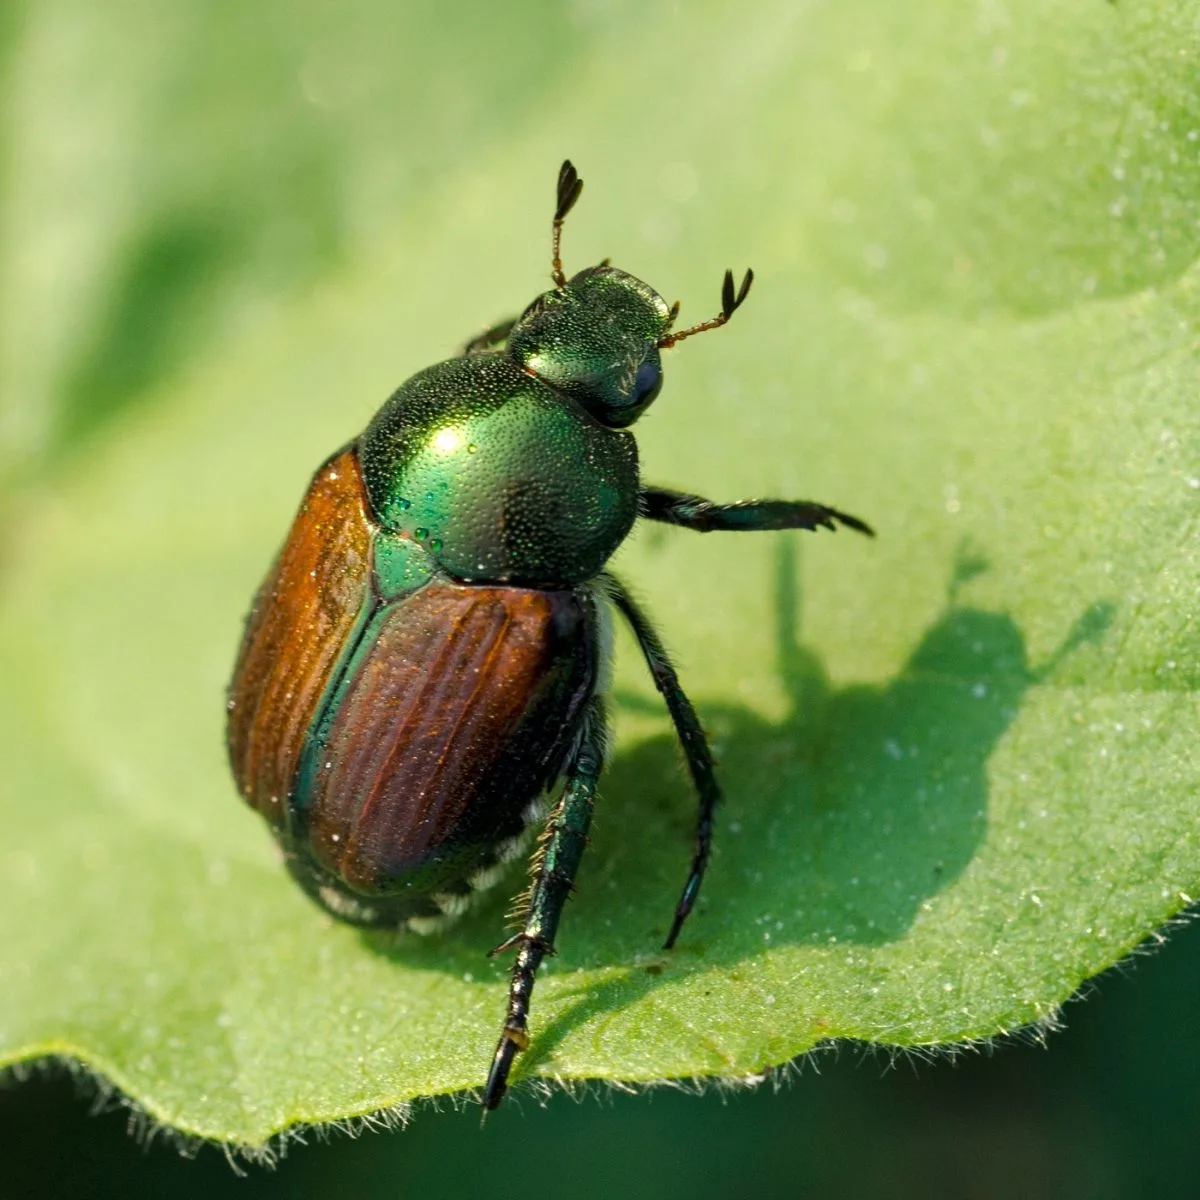 Japanese beetle on a leaf